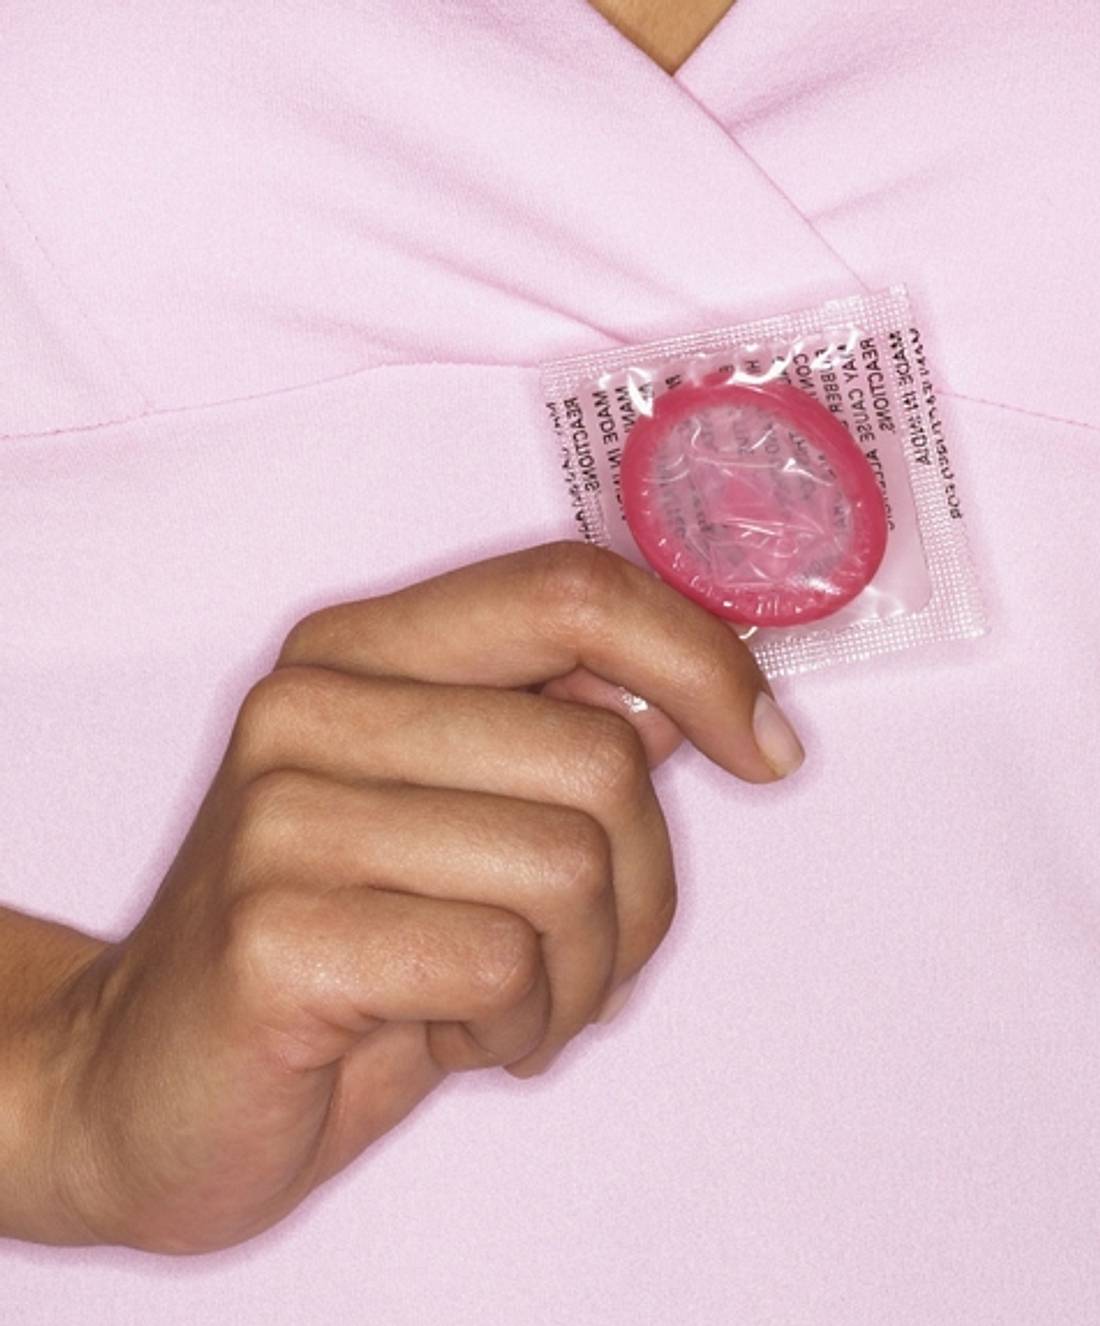 Eure Fragen: Verträgt meine Freundin keine Kondome?